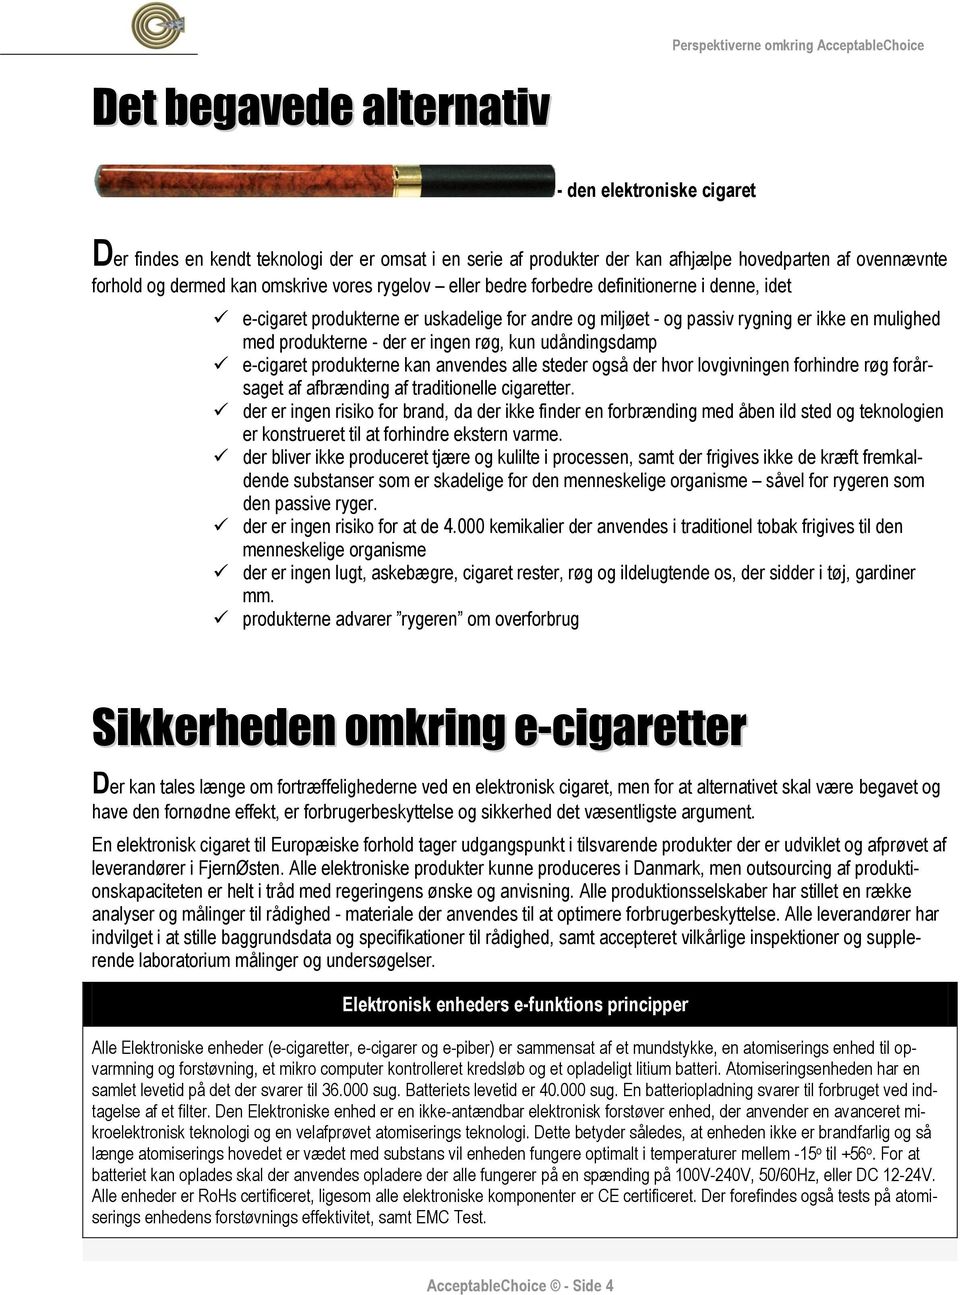 udåndingsdamp e-cigaret produkterne kan anvendes alle steder også der hvor lovgivningen forhindre røg forårsaget af afbrænding af traditionelle cigaretter.